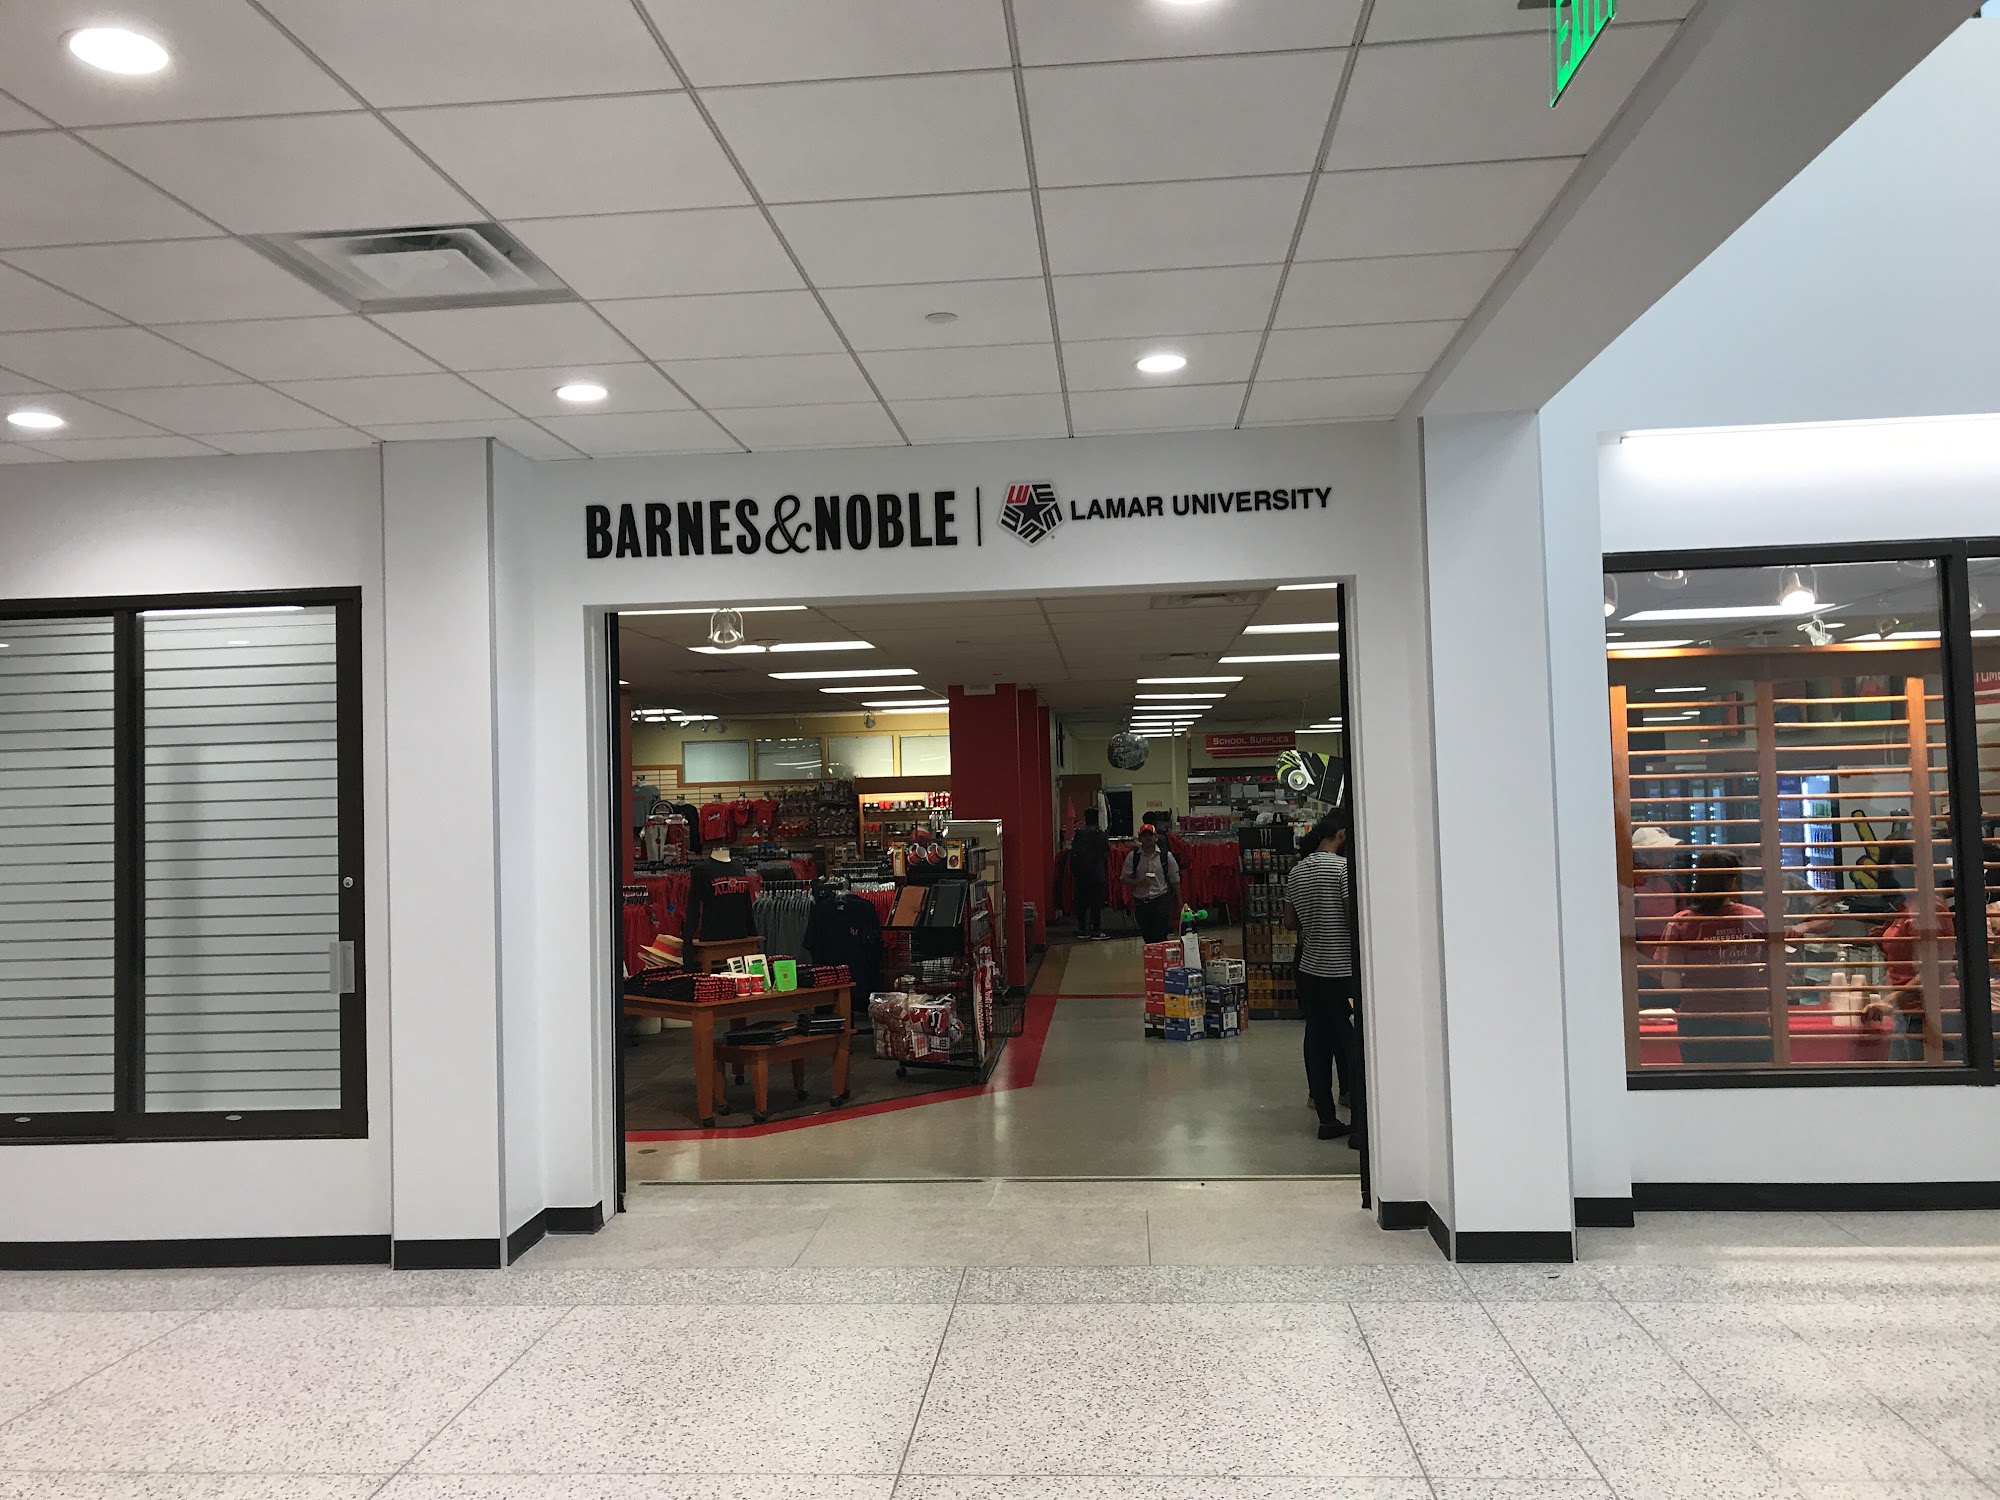 Barnes & Noble at Lamar University